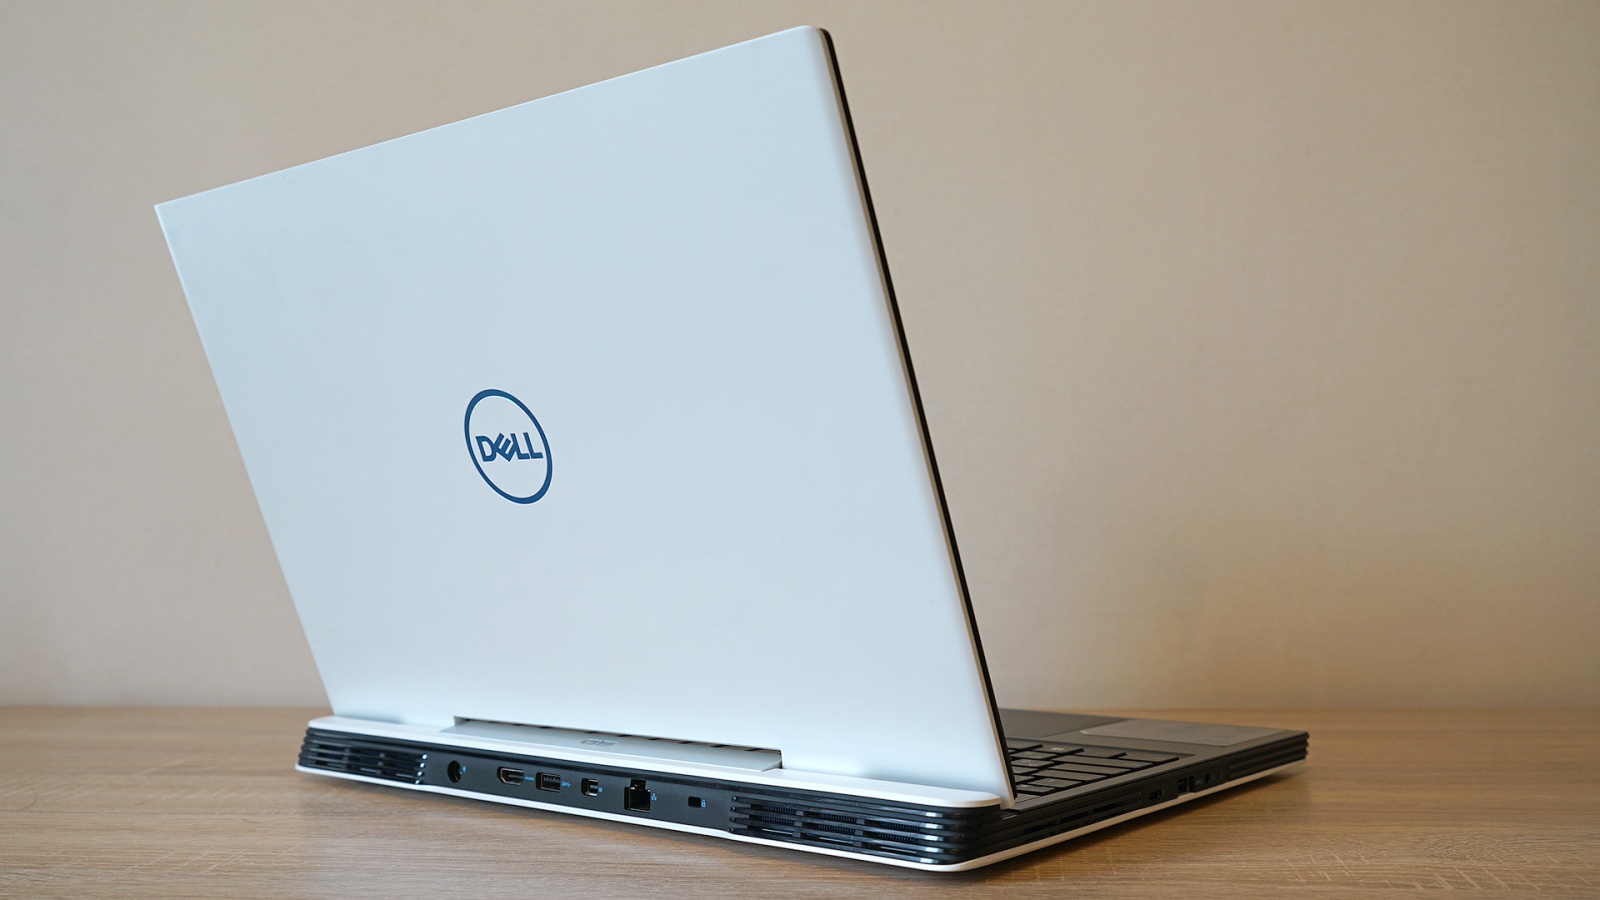 Dell G5 5590: один из самых доступных игровых ноутбуков с RTX 2060 - 1